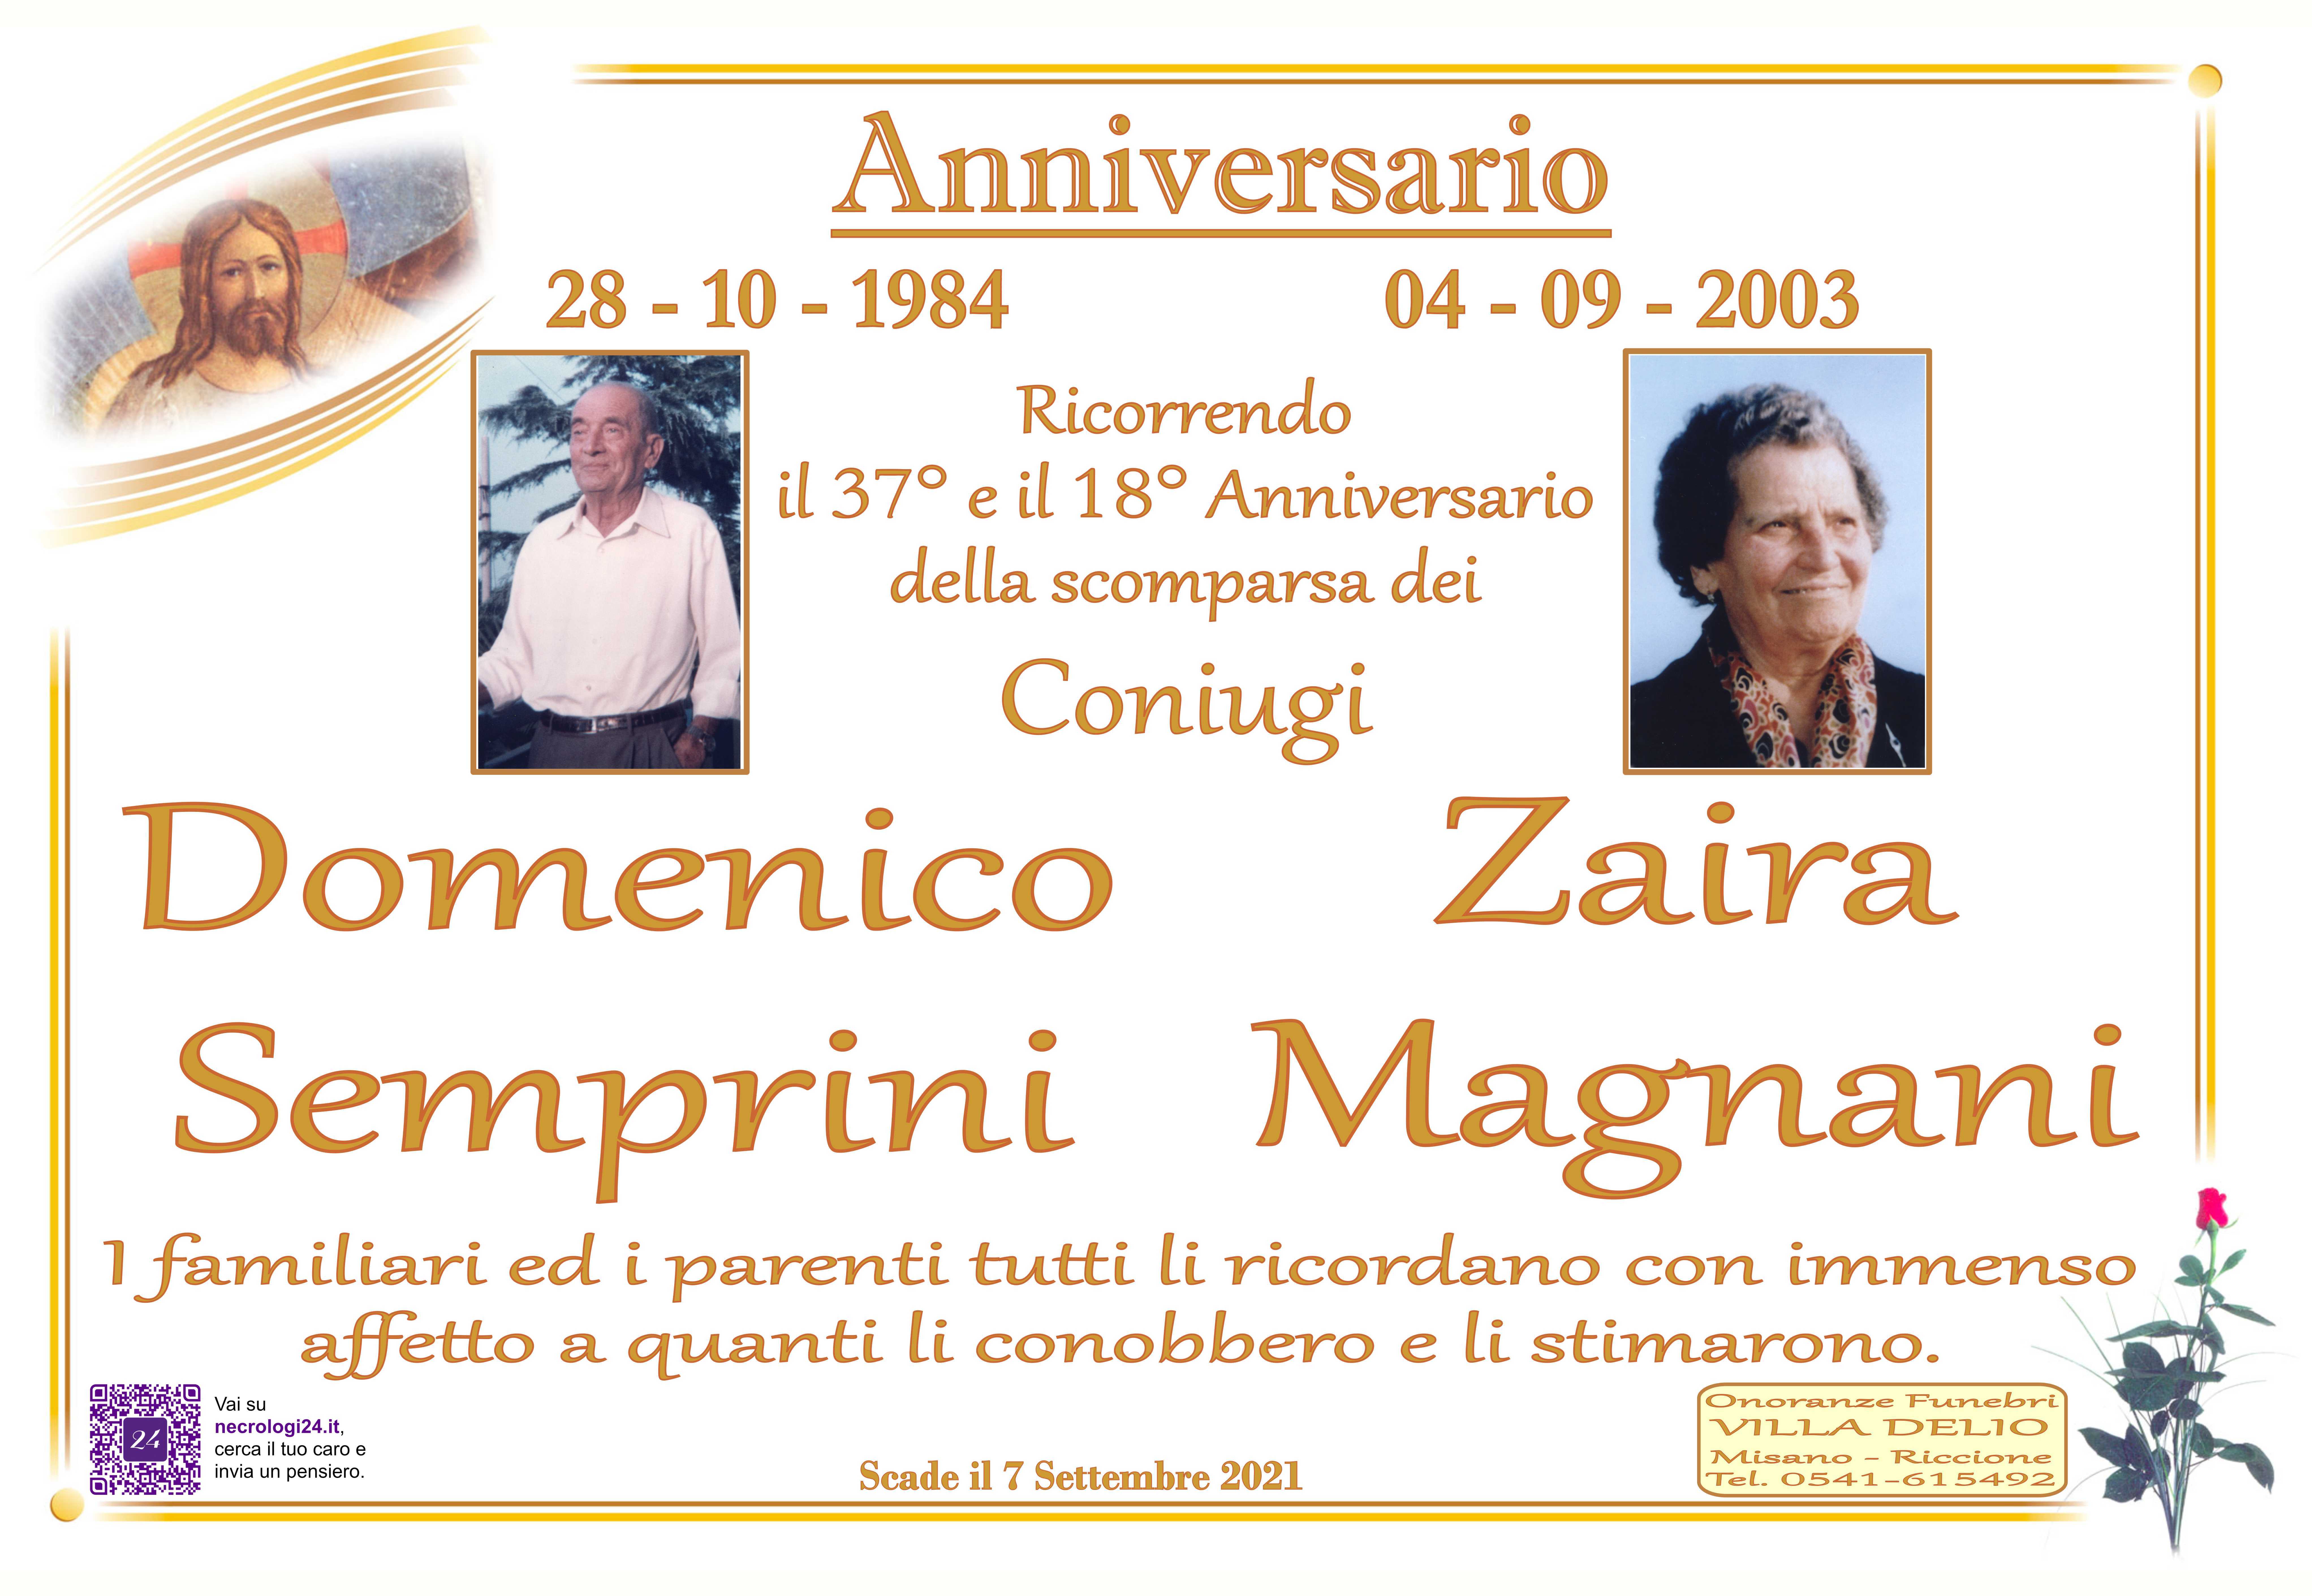 Domenico Semprini e Zaira Magnani